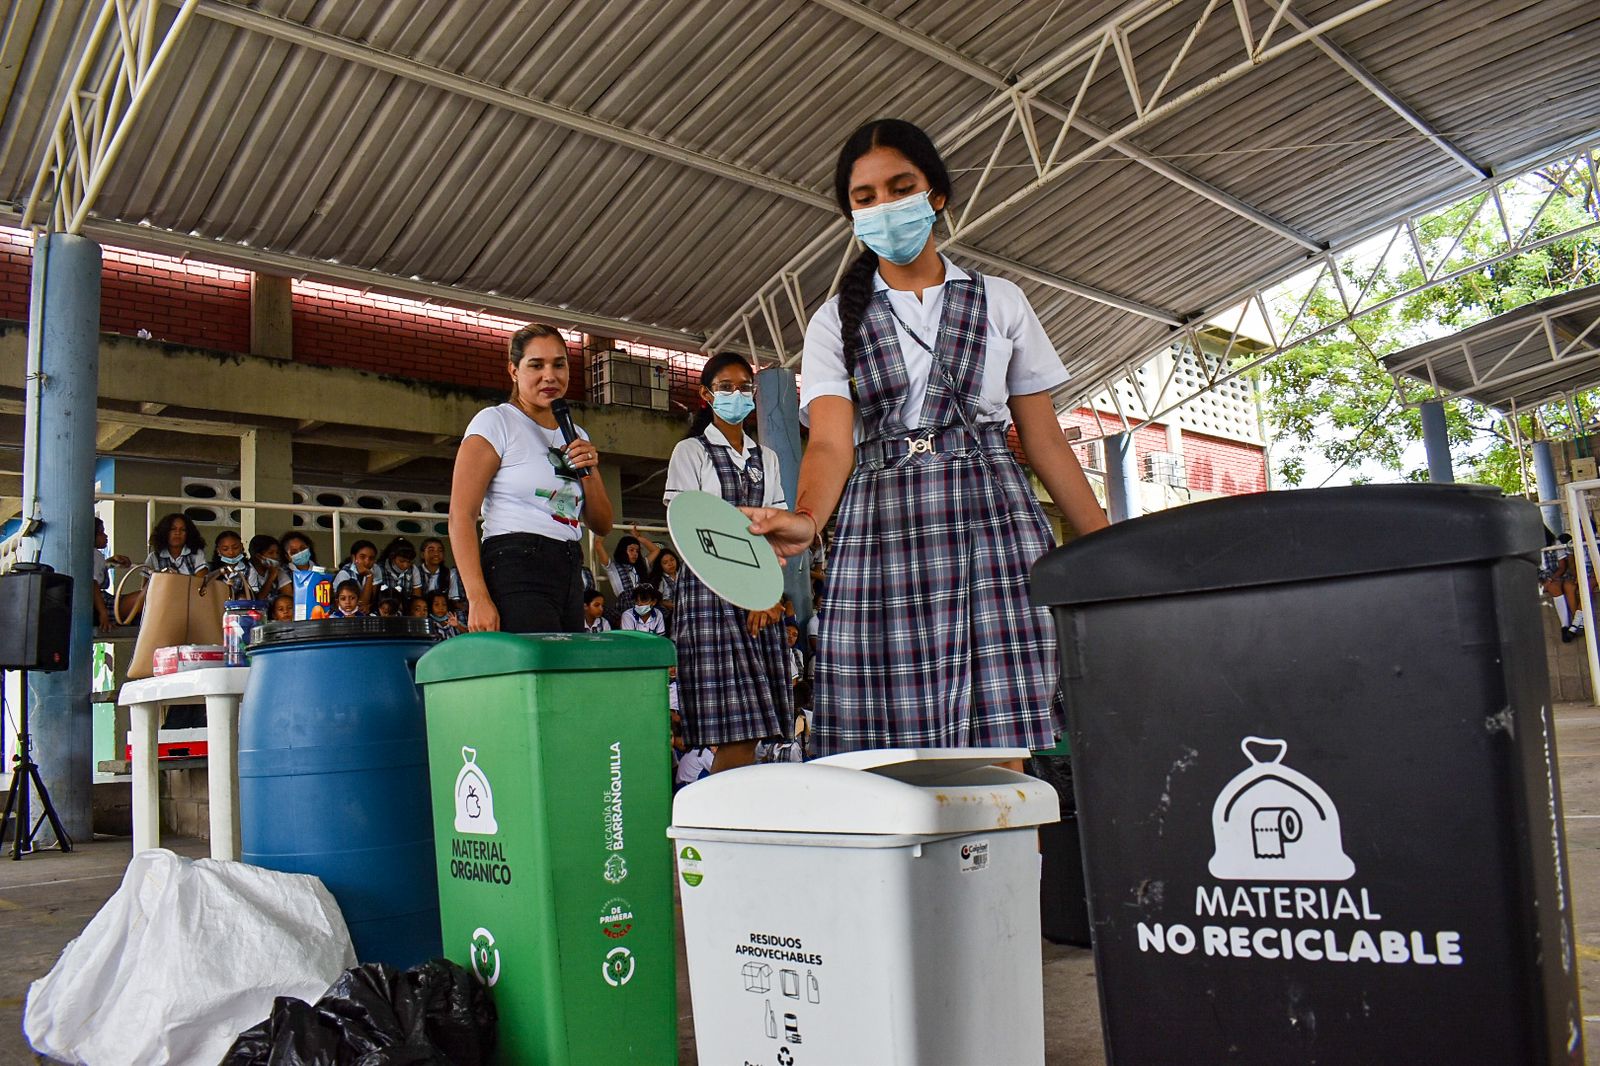 Recicla por BAQ dignifica labor del reciclador y ha capacitado a más de 10.000 ciudadanos sobre cuidado del medioambiente